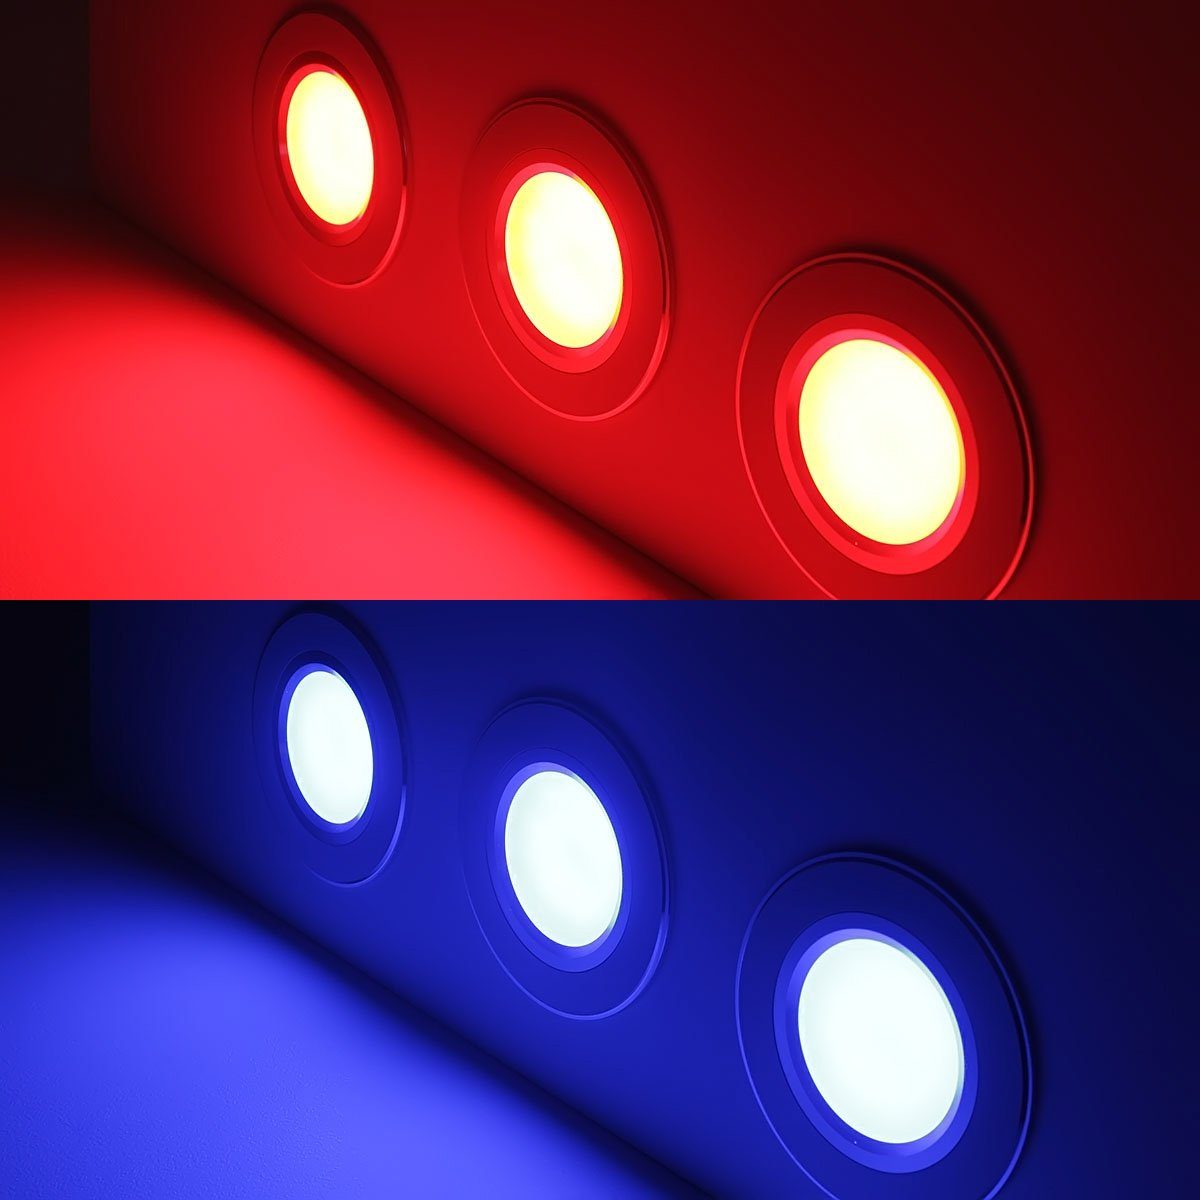 LED, Ogeled RGB, Dimmbar, 24V, Einbaustrahler Einbauleuchte Decken Lampe, Spot LED RGB, Einbauleuchten LED Einbauspots, Spot Lampe, Einbaustrahler,